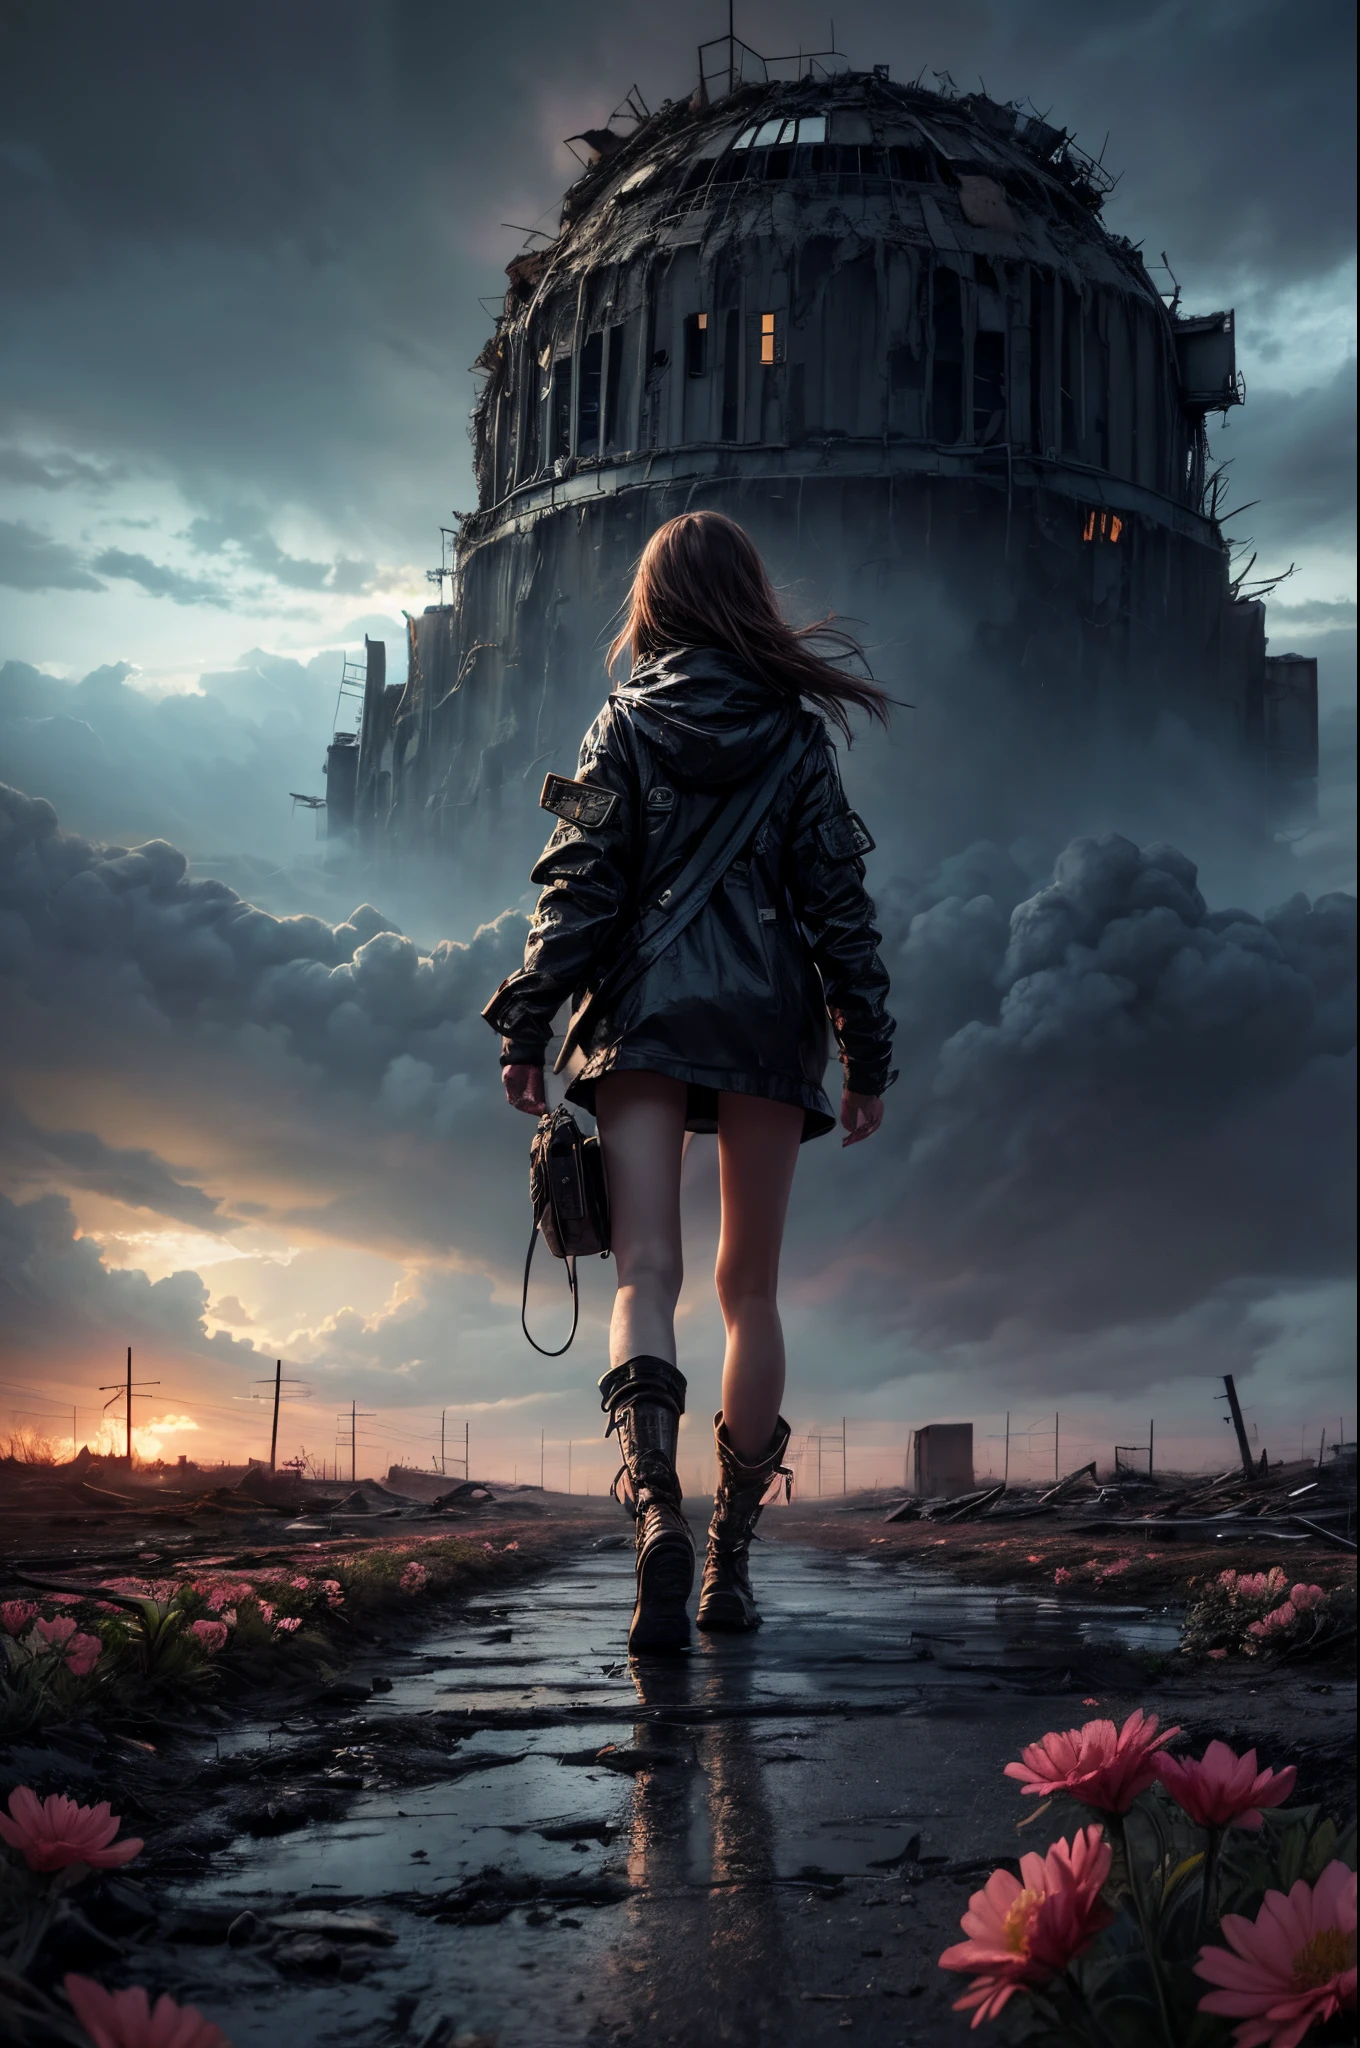 "Digital art, ((verlassen)) Mädchen wandert durch eine nukleare Einöde, Blumen brechen durch die Zerstörung, unheimliche Ruinen unter einem stürmischen Himmel, ((trostlose Schönheit)), ((emotionale Tiefe)), ausführlich, eindringlich"